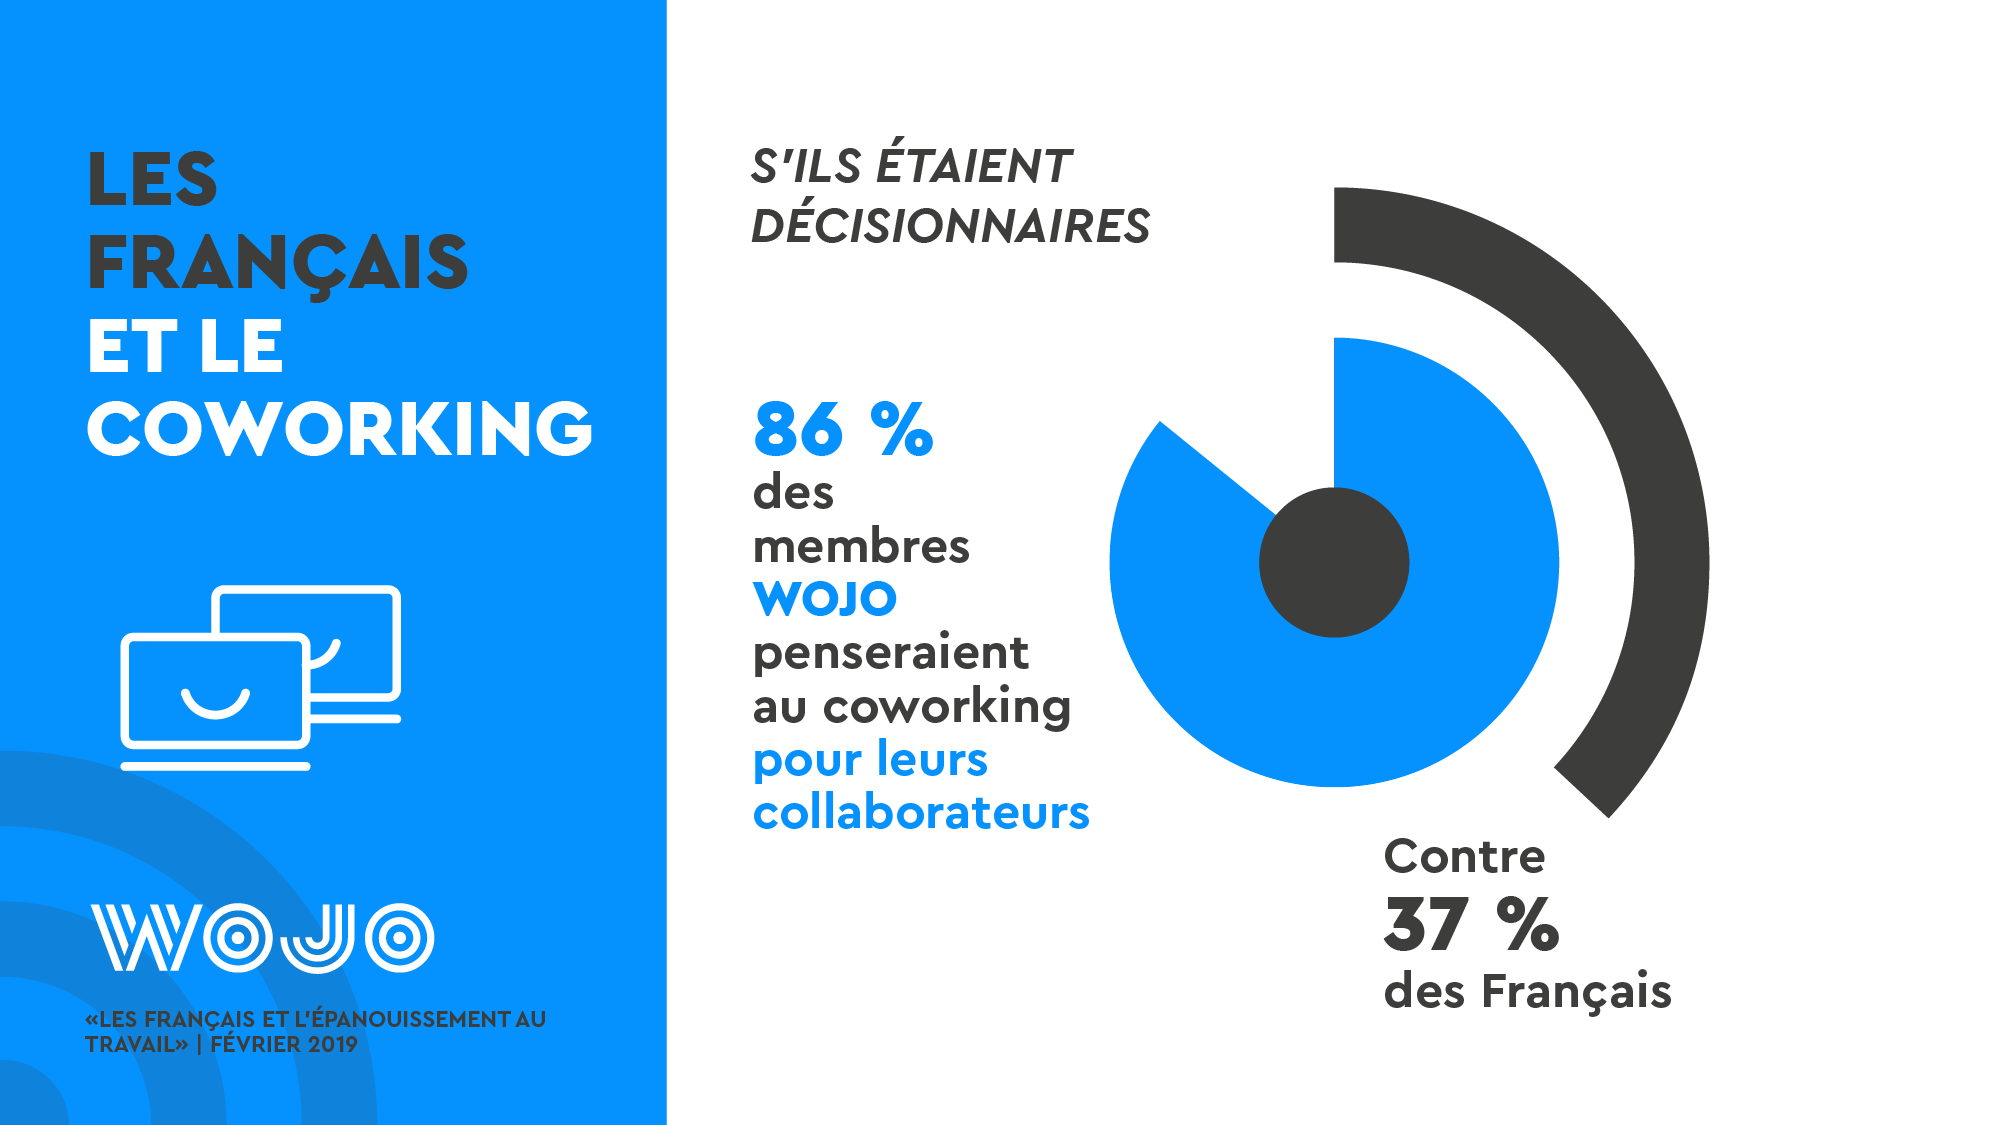 Les Français et l'épanouissement au travail - Enquête WOJO - Coworking © Data visualisation : ÉCLAIRAGE PUBLIC